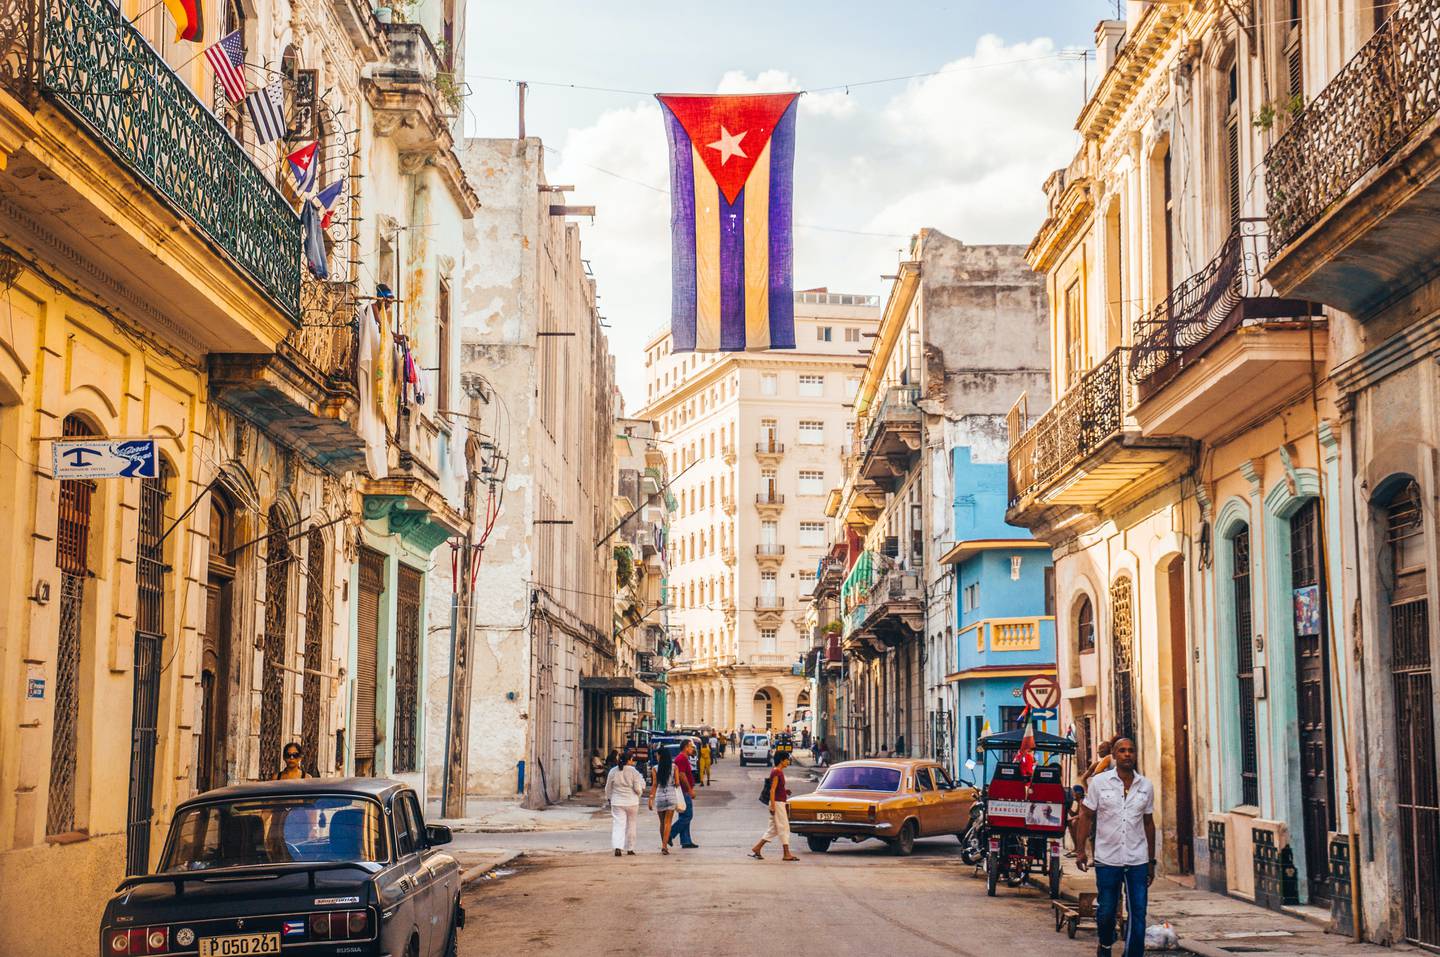 Sin embargo, La Habana siempre se pronunció por una solución negociada de la crisis entre las dos Coreas, divididas al final de la Segunda Guerra Mundial y enfrentadas en un conflicto hace más de seis décadas.